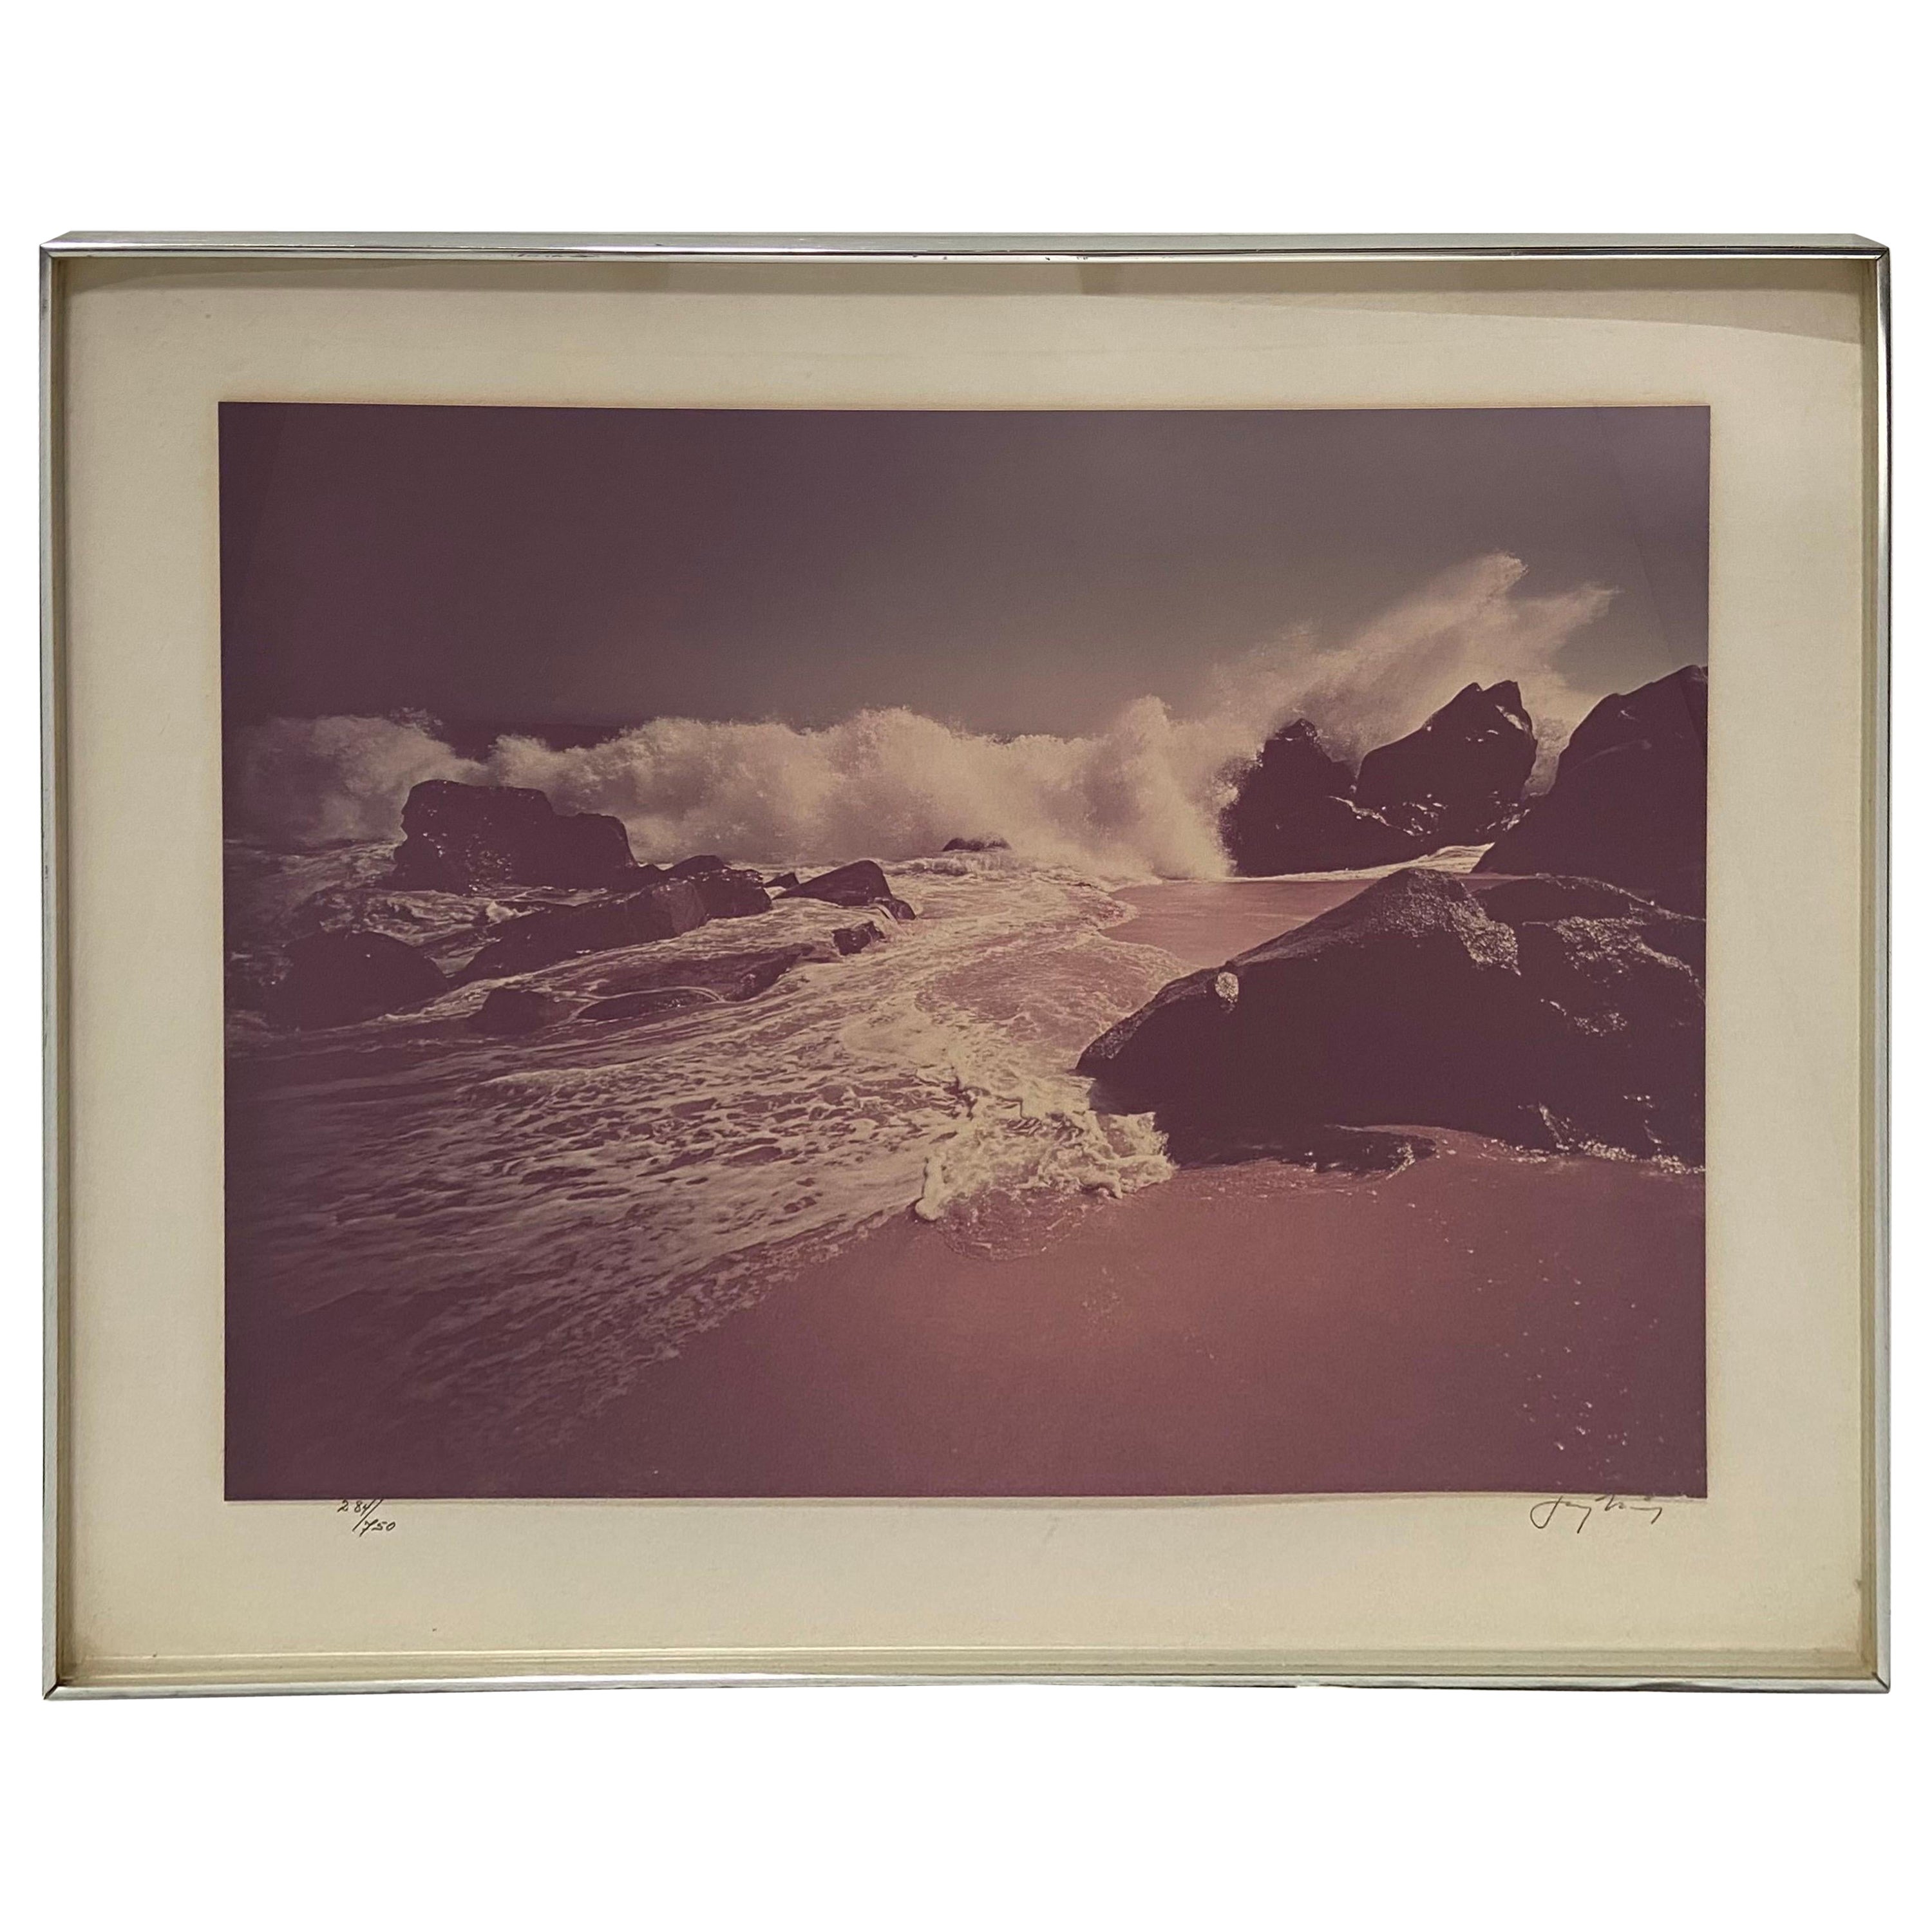 Jay Maisel - Photographie couleur d'une scène de plage des années 1970, signée, numérotée et encadrée